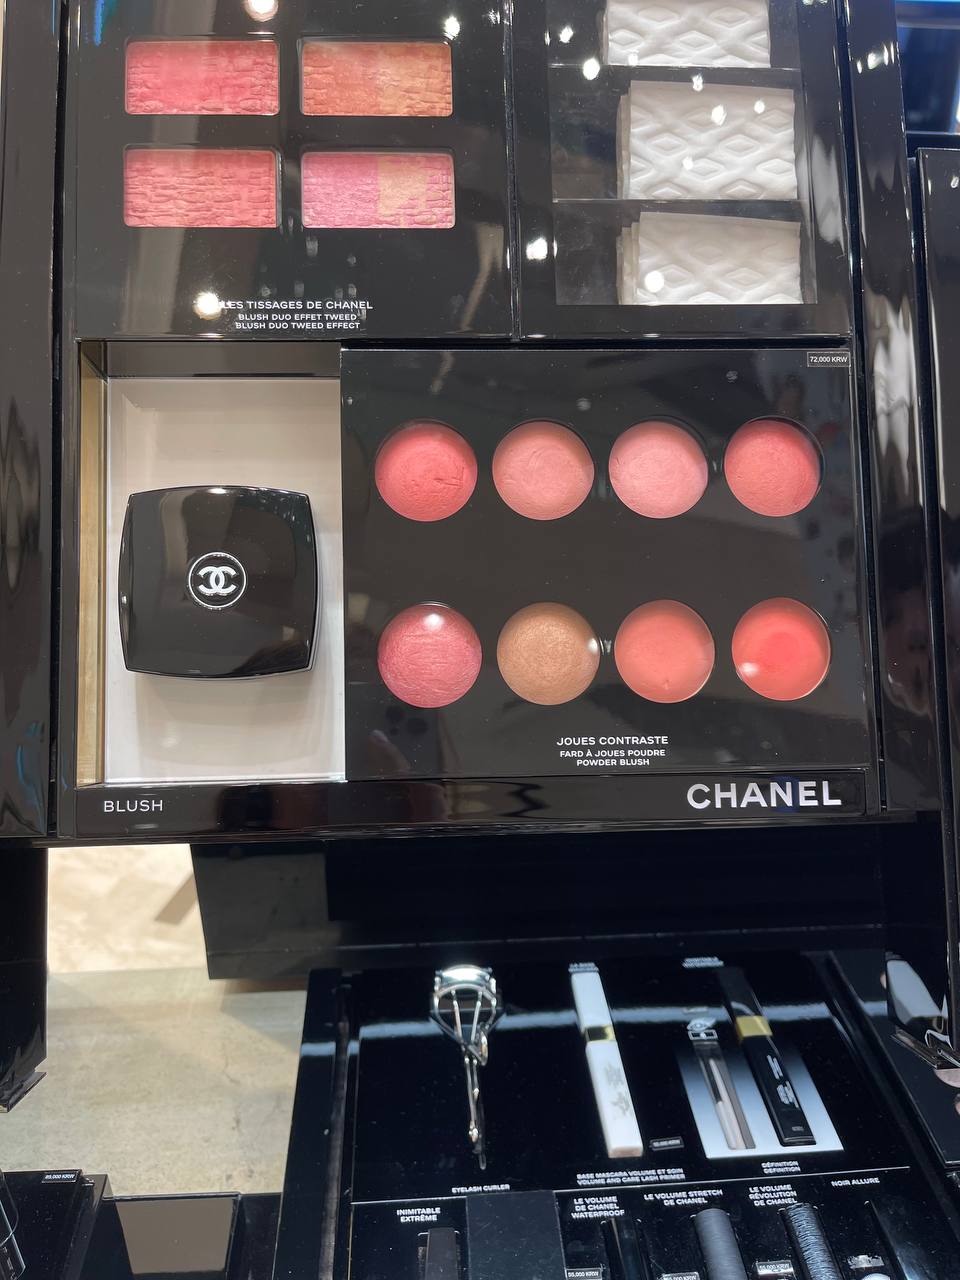 СНАNEL&lt;br&gt;
&lt;br&gt;
Бренд, про который мы все знаем. Занимает Олимп женской моды🔝&lt;br&gt;
&lt;br&gt;
Рекомендую обратить внимание на пудры и румяна, бронзатор. Даже просто зеркало Chanel привнесет шарм в вашу сумку.&lt;br&gt;
&lt;br&gt;
У меня есть пудра Chanel, и знаете как я к ней отношусь? С большим уважением и трепетом😁😎 Она украшение любой моей сумки.&lt;br&gt;
&lt;br&gt;
По этикету:&lt;br&gt;
 за столом можно только пудрить нос или посмотреть в зеркало. Губы и прочее мы красим в уборной. &lt;br&gt;
&lt;br&gt;
Поэтому это тот предмет косметики, который у всех на виду.&lt;br&gt;
&lt;br&gt;
Я бы вторую купила даже не думая, но она настолько долговечная, что думаю только через год.&lt;br&gt;
&lt;br&gt;
Пудра в черной палетке - 9.500 ₽&lt;br&gt;
Пудра в молочной палетке - 10.000 ₽&lt;br&gt;
Бронзер/румяна - 8.100 ₽&lt;br&gt;
Зеркало Chanel - 5.500 ₽&lt;br&gt;
&lt;br&gt;
Все цены с учетом доставки до Москвы, 16го мая будет в Мск. В Мск - самовывоз или Яндекс доставка, почта, сдэк, боксберри (за счет покупателя). &lt;br&gt;
&lt;br&gt;
Декоративная косметика Chanel в России не продаётся сейчас, только уходовая❌&lt;br&gt;
&lt;br&gt;
Кто хочет приобрести - пишите мне в личные сообщения @dayana_stylist❤️&lt;br&gt;
&lt;br&gt;
 📍Выкупаю 2 дня - 10-11 мая title=